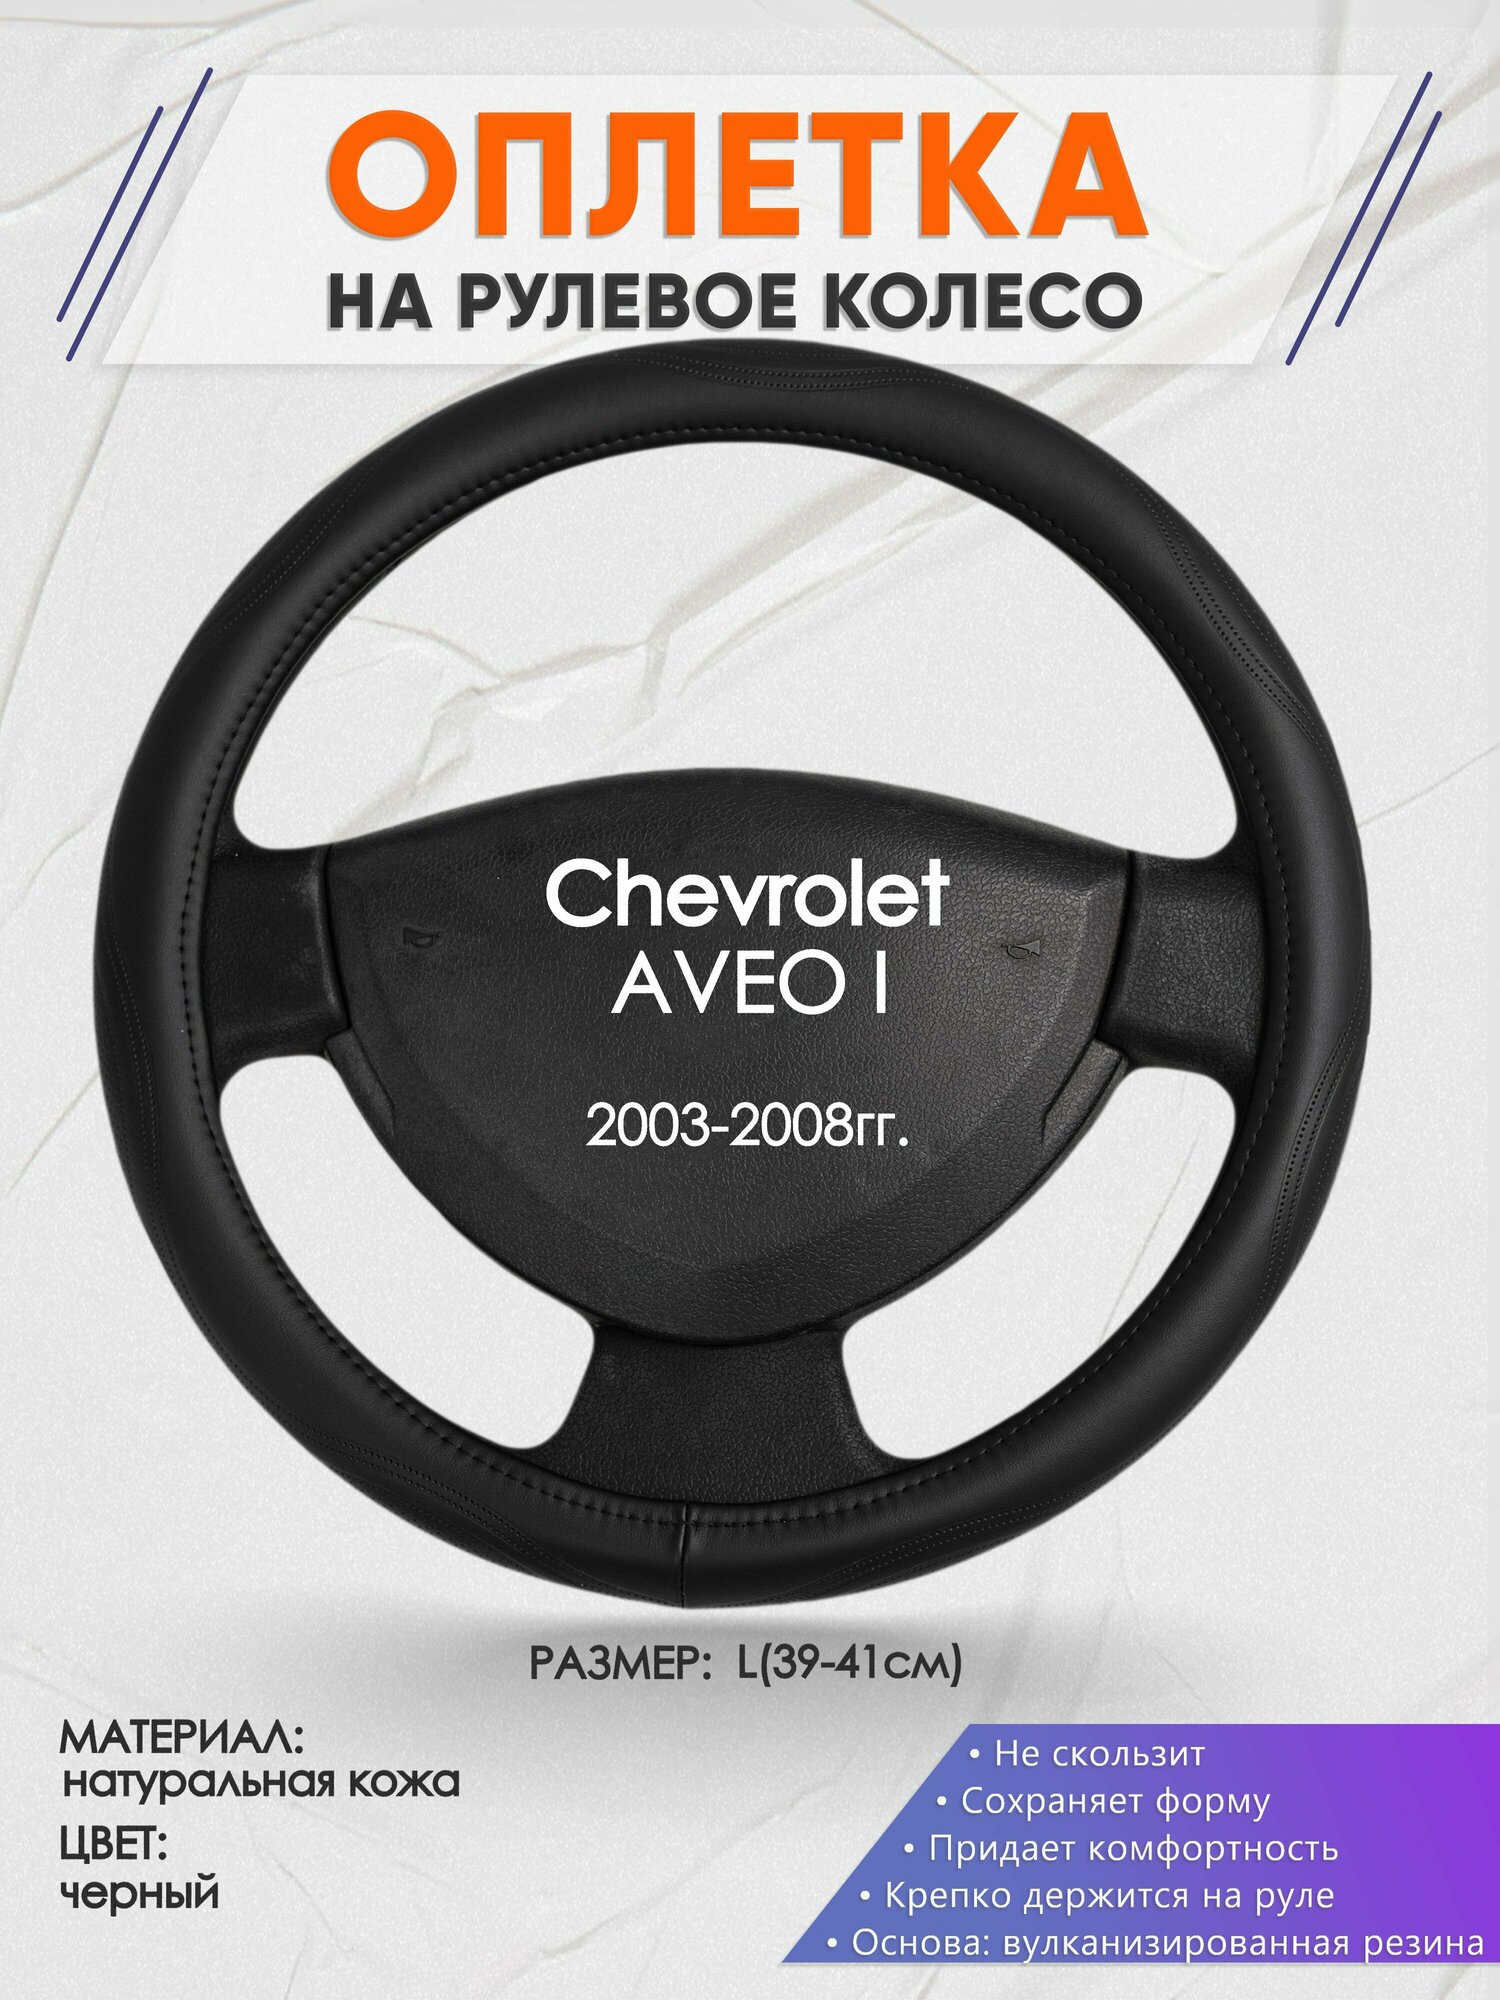 Оплетка на руль для Chevrolet AVEO I(Шевроле Авео 1) 2003-2008 L(39-41см) Натуральная кожа 28